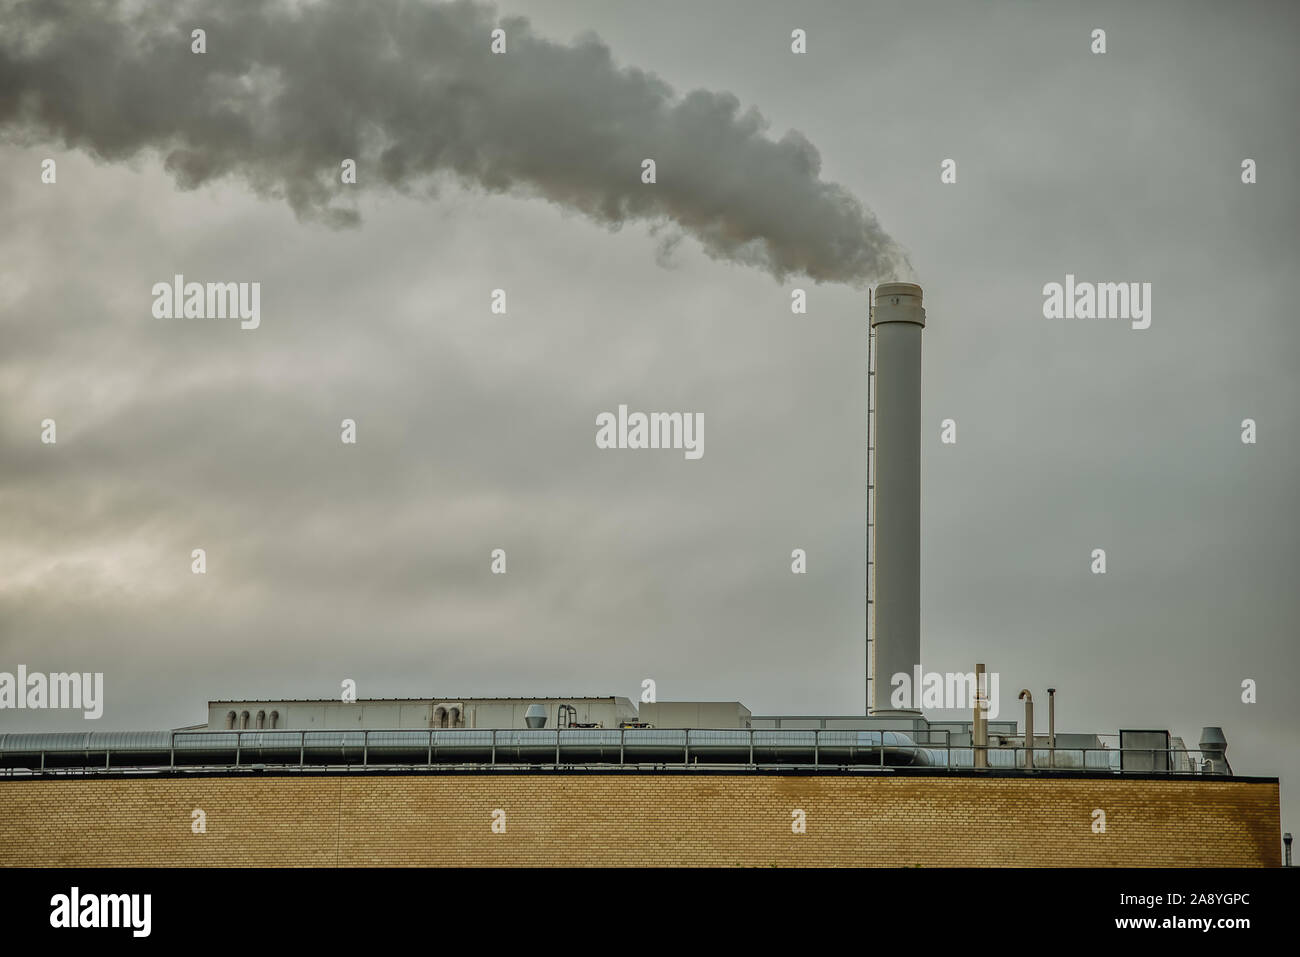 Schwarzer Rauch auf einem grauen Himmel, sie kommen aus einem hohen Schornstein auf dem Dach einer Fabrik. Dänemark, 10. November 2019 Stockfoto